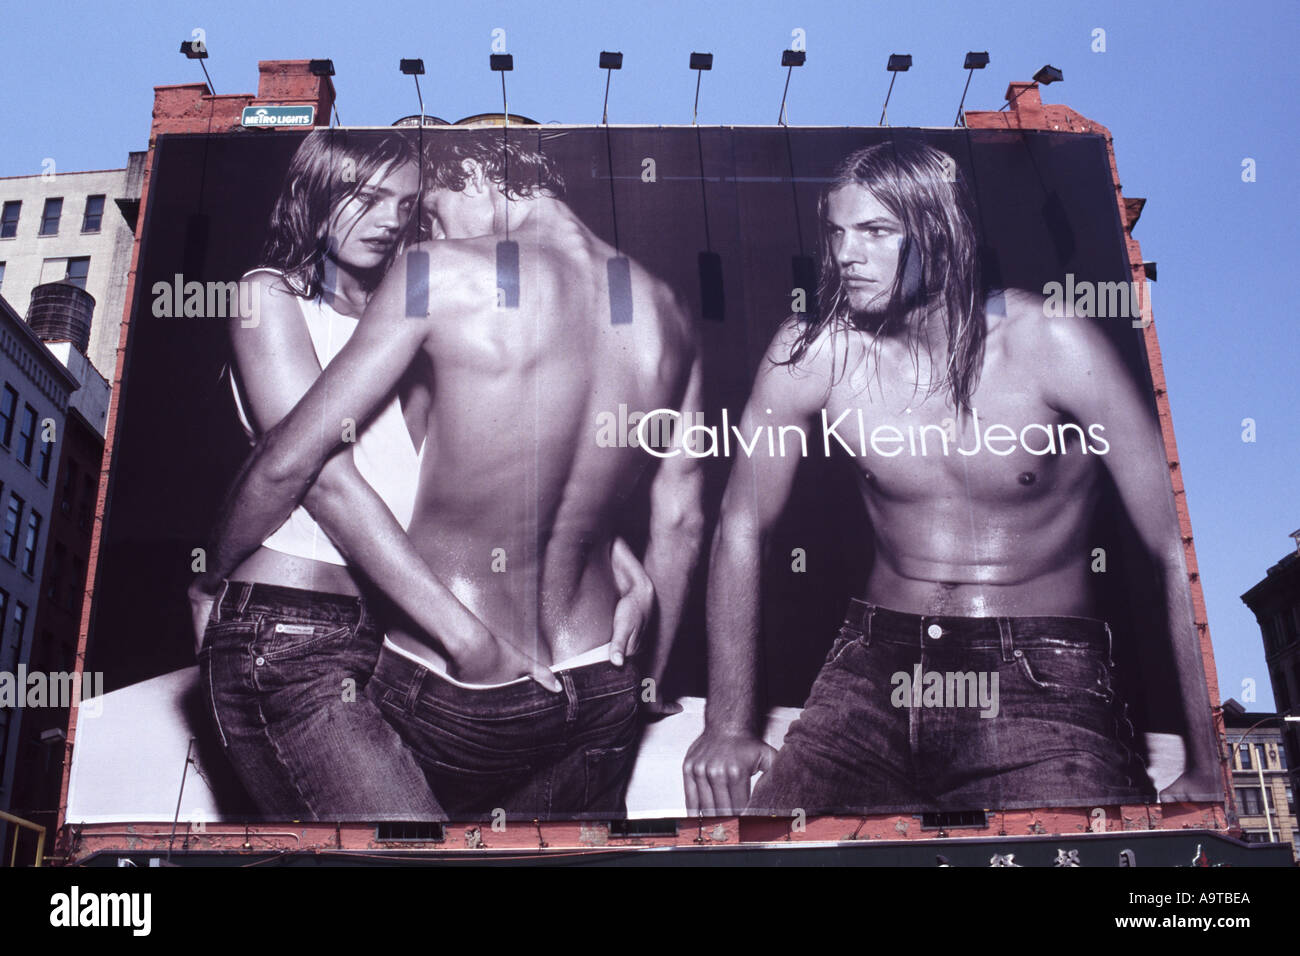 Calvin Klein Billboard New York City Stockfotografie Alamy